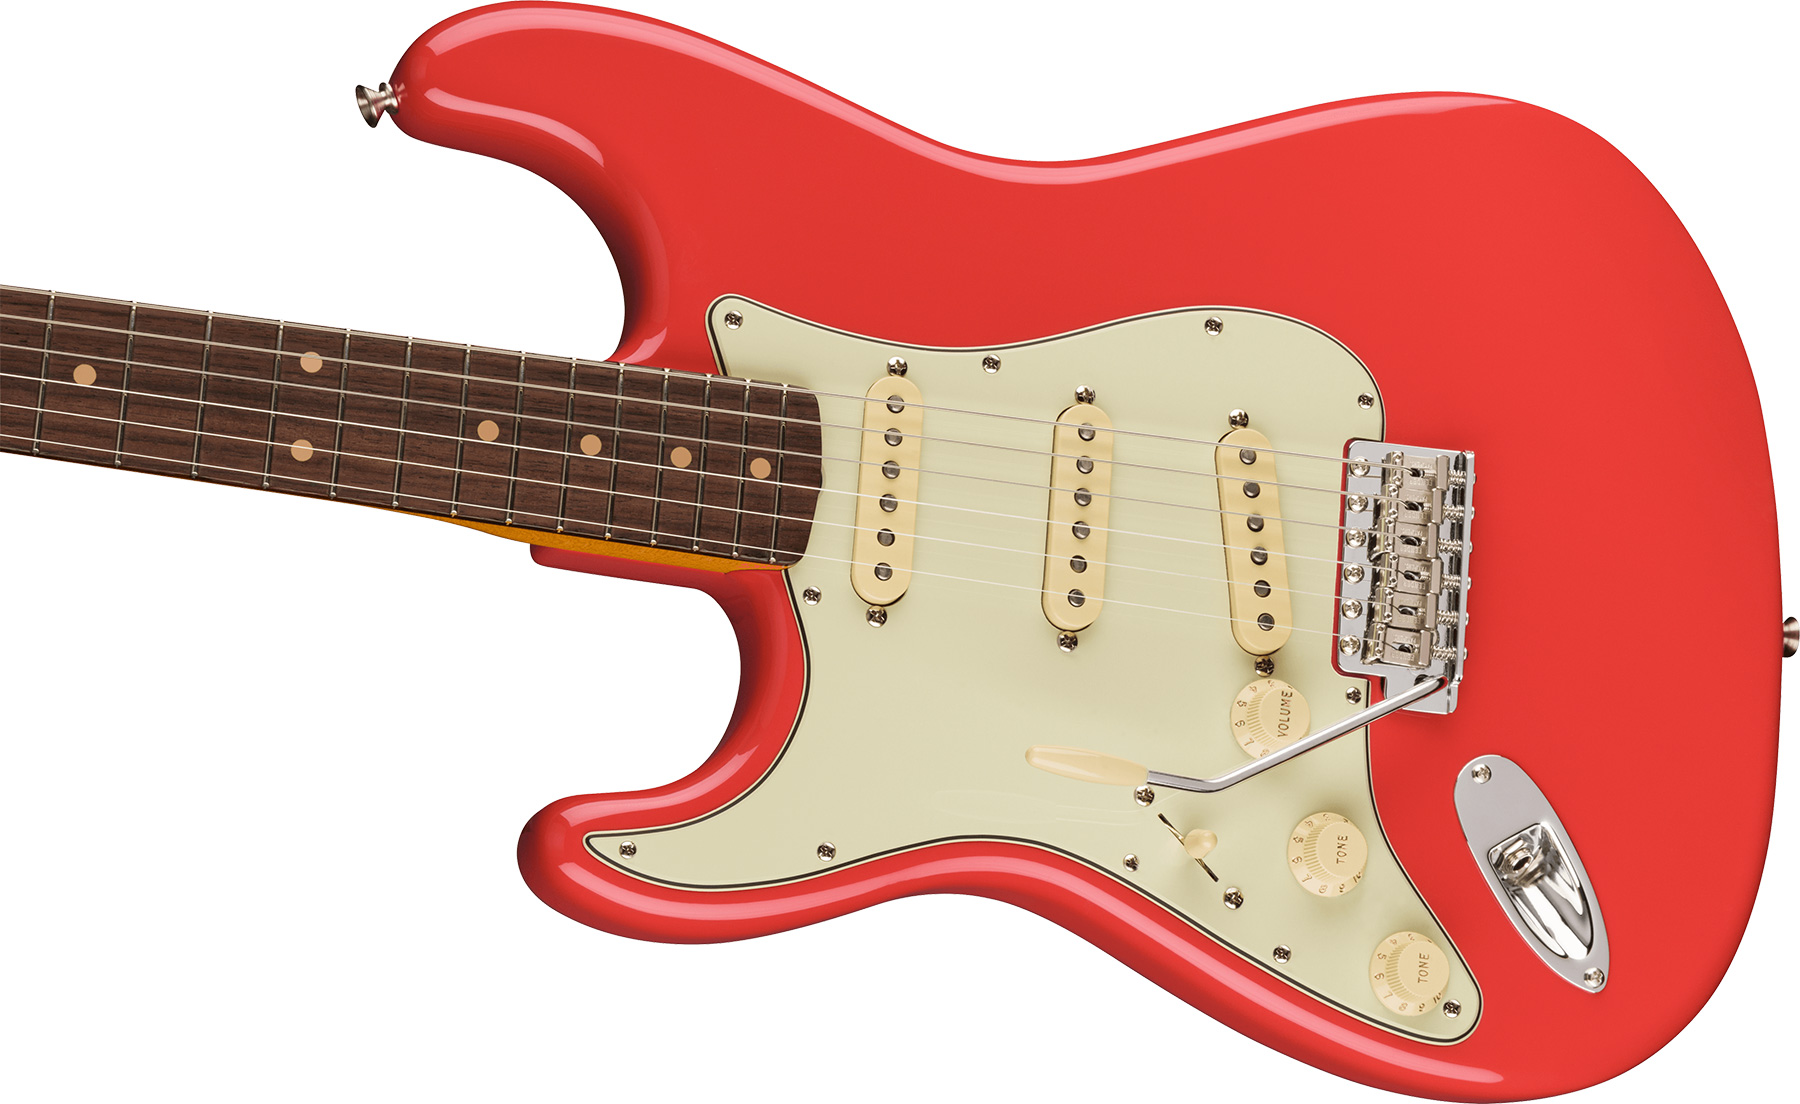 Fender Strat 1961 American Vintage Ii Lh Gaucher Usa 3s Trem Rw - Fiesta Red - Guitarra electrica para zurdos - Variation 2